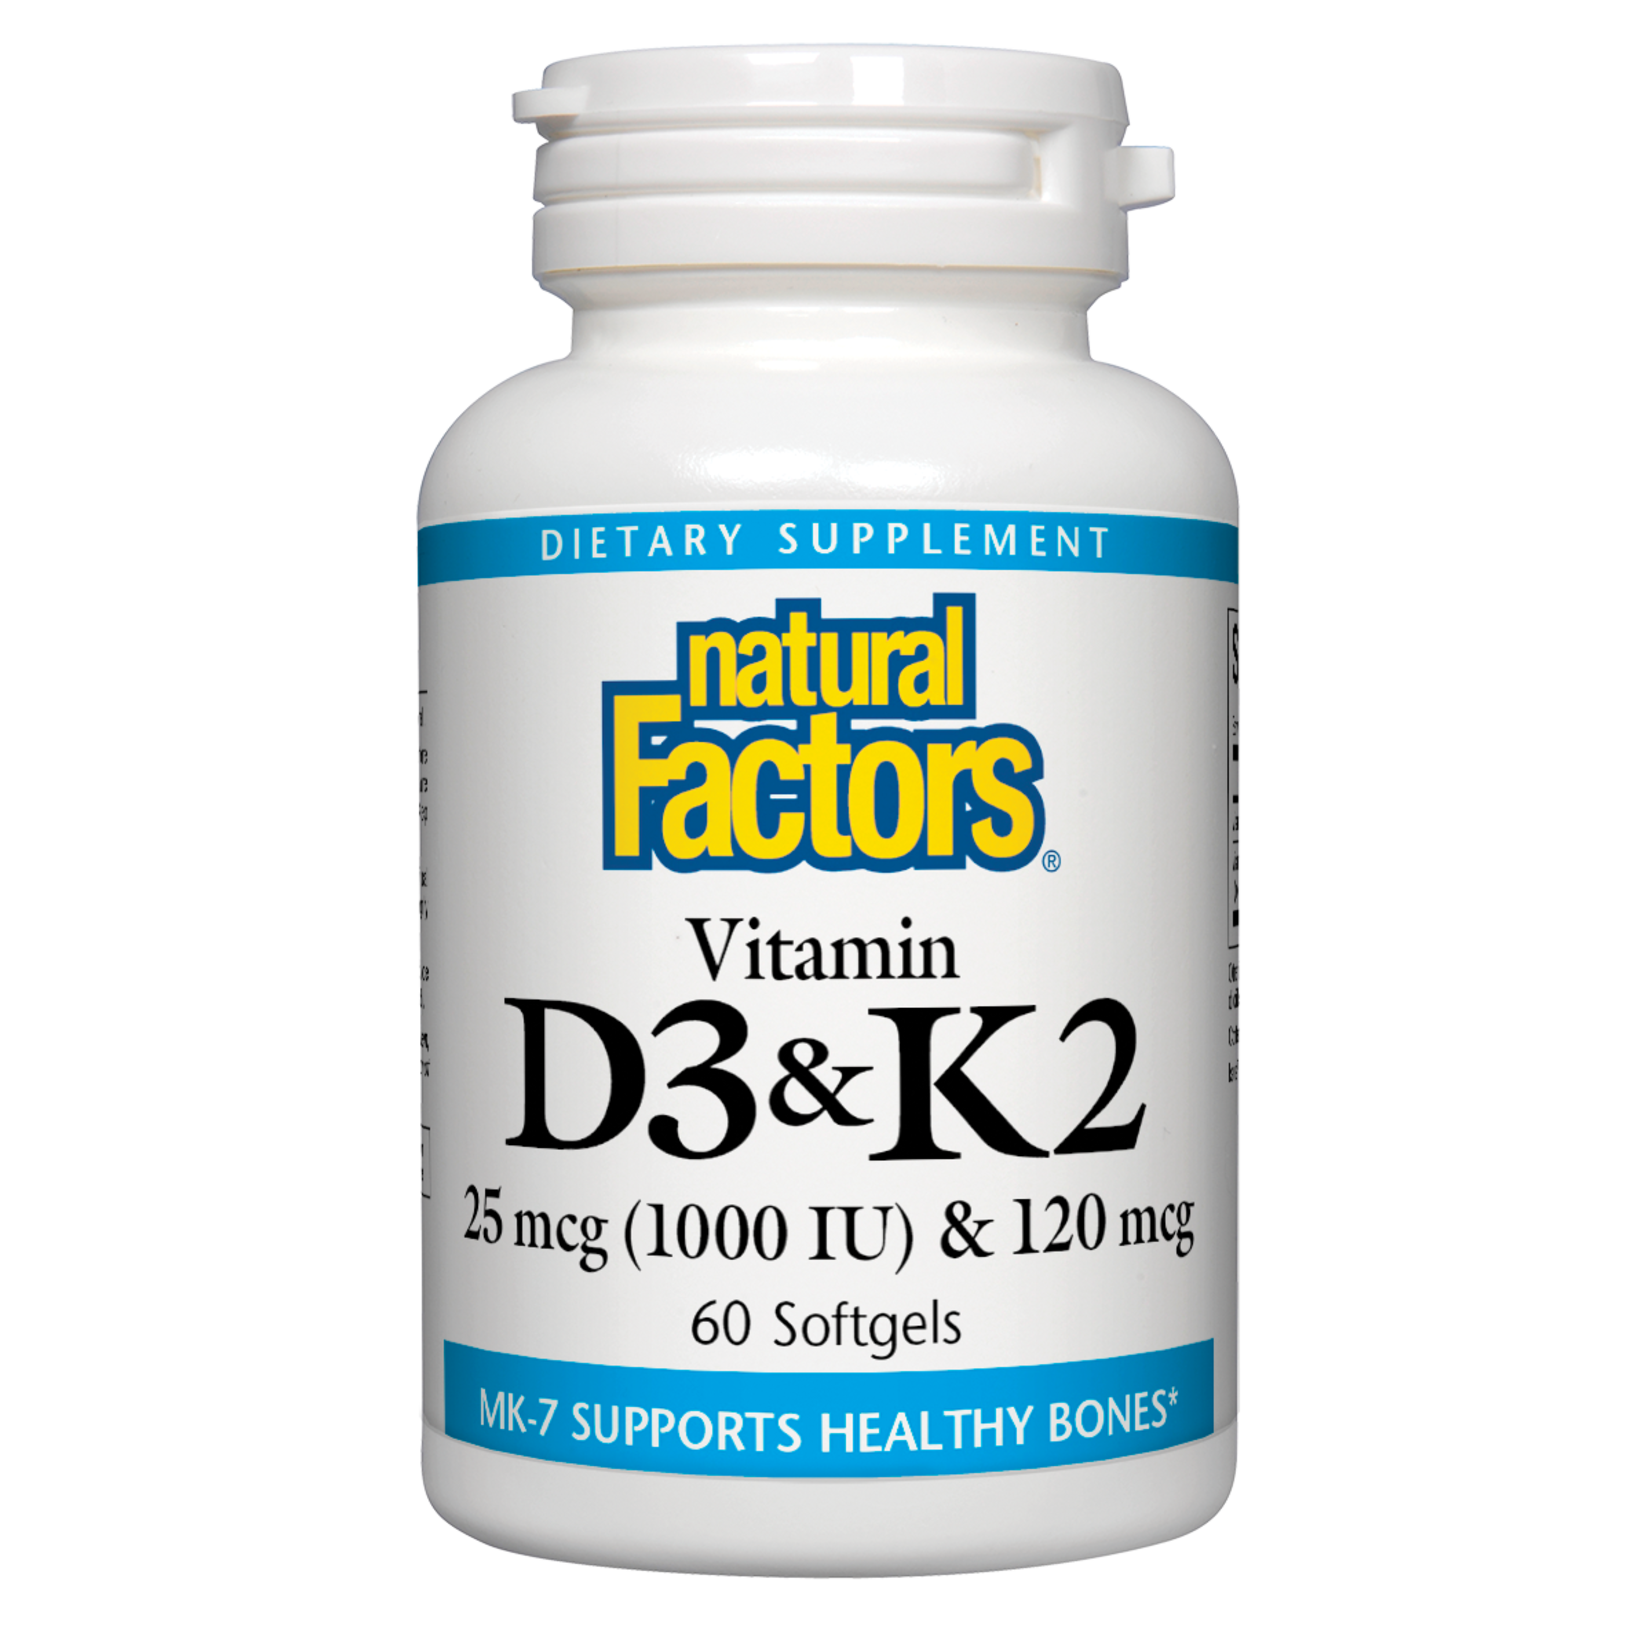 Natural Factors Natural Factors - Vitamin D3 & K2 1000 IU & 120 mcg - 60 Softgels